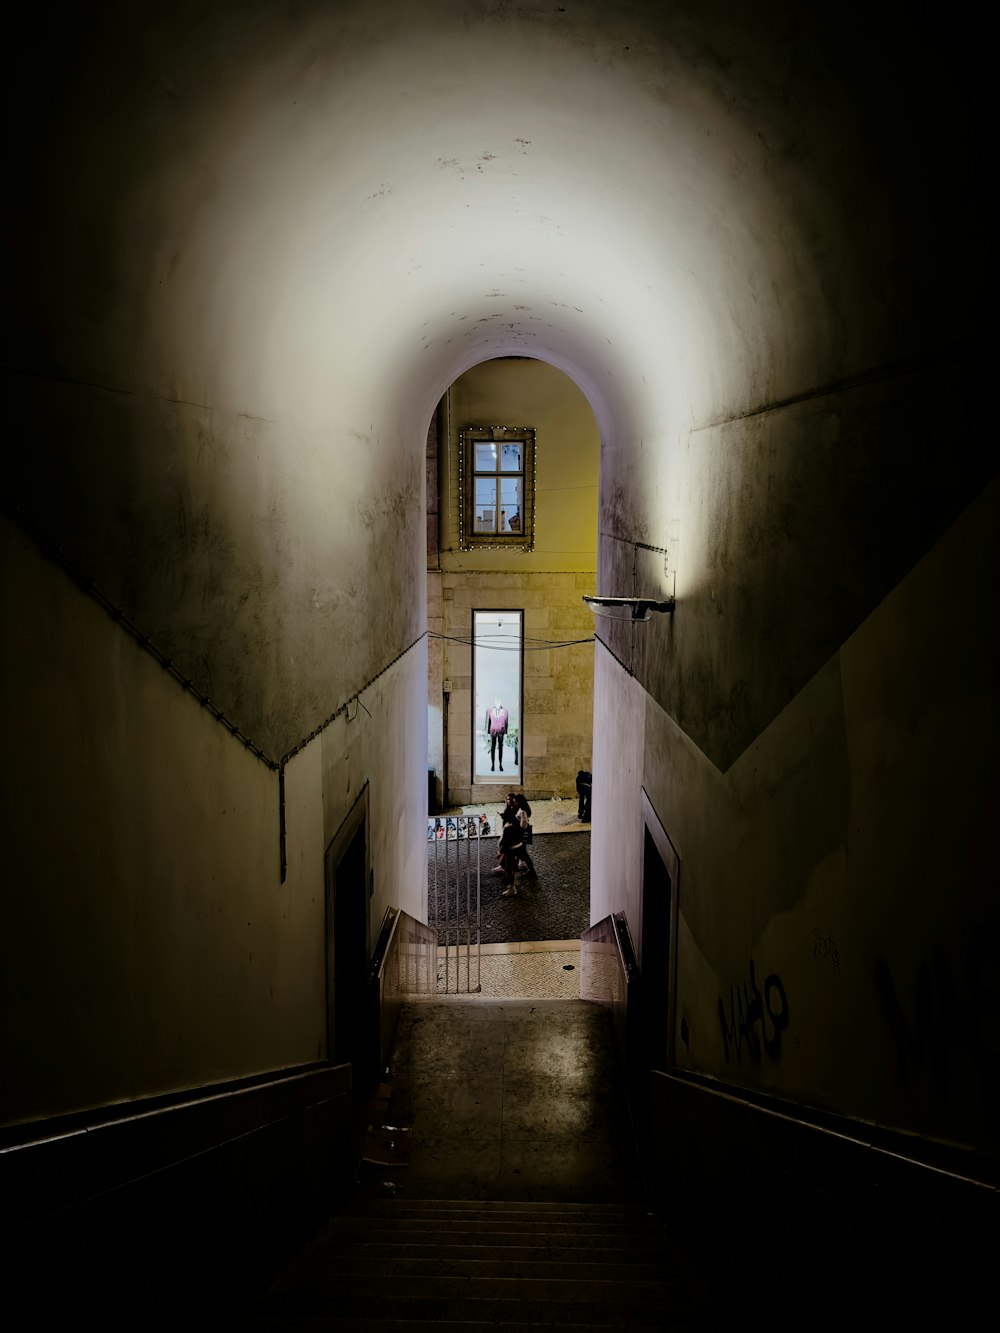 Un tunnel buio con una persona che cammina lungo di esso